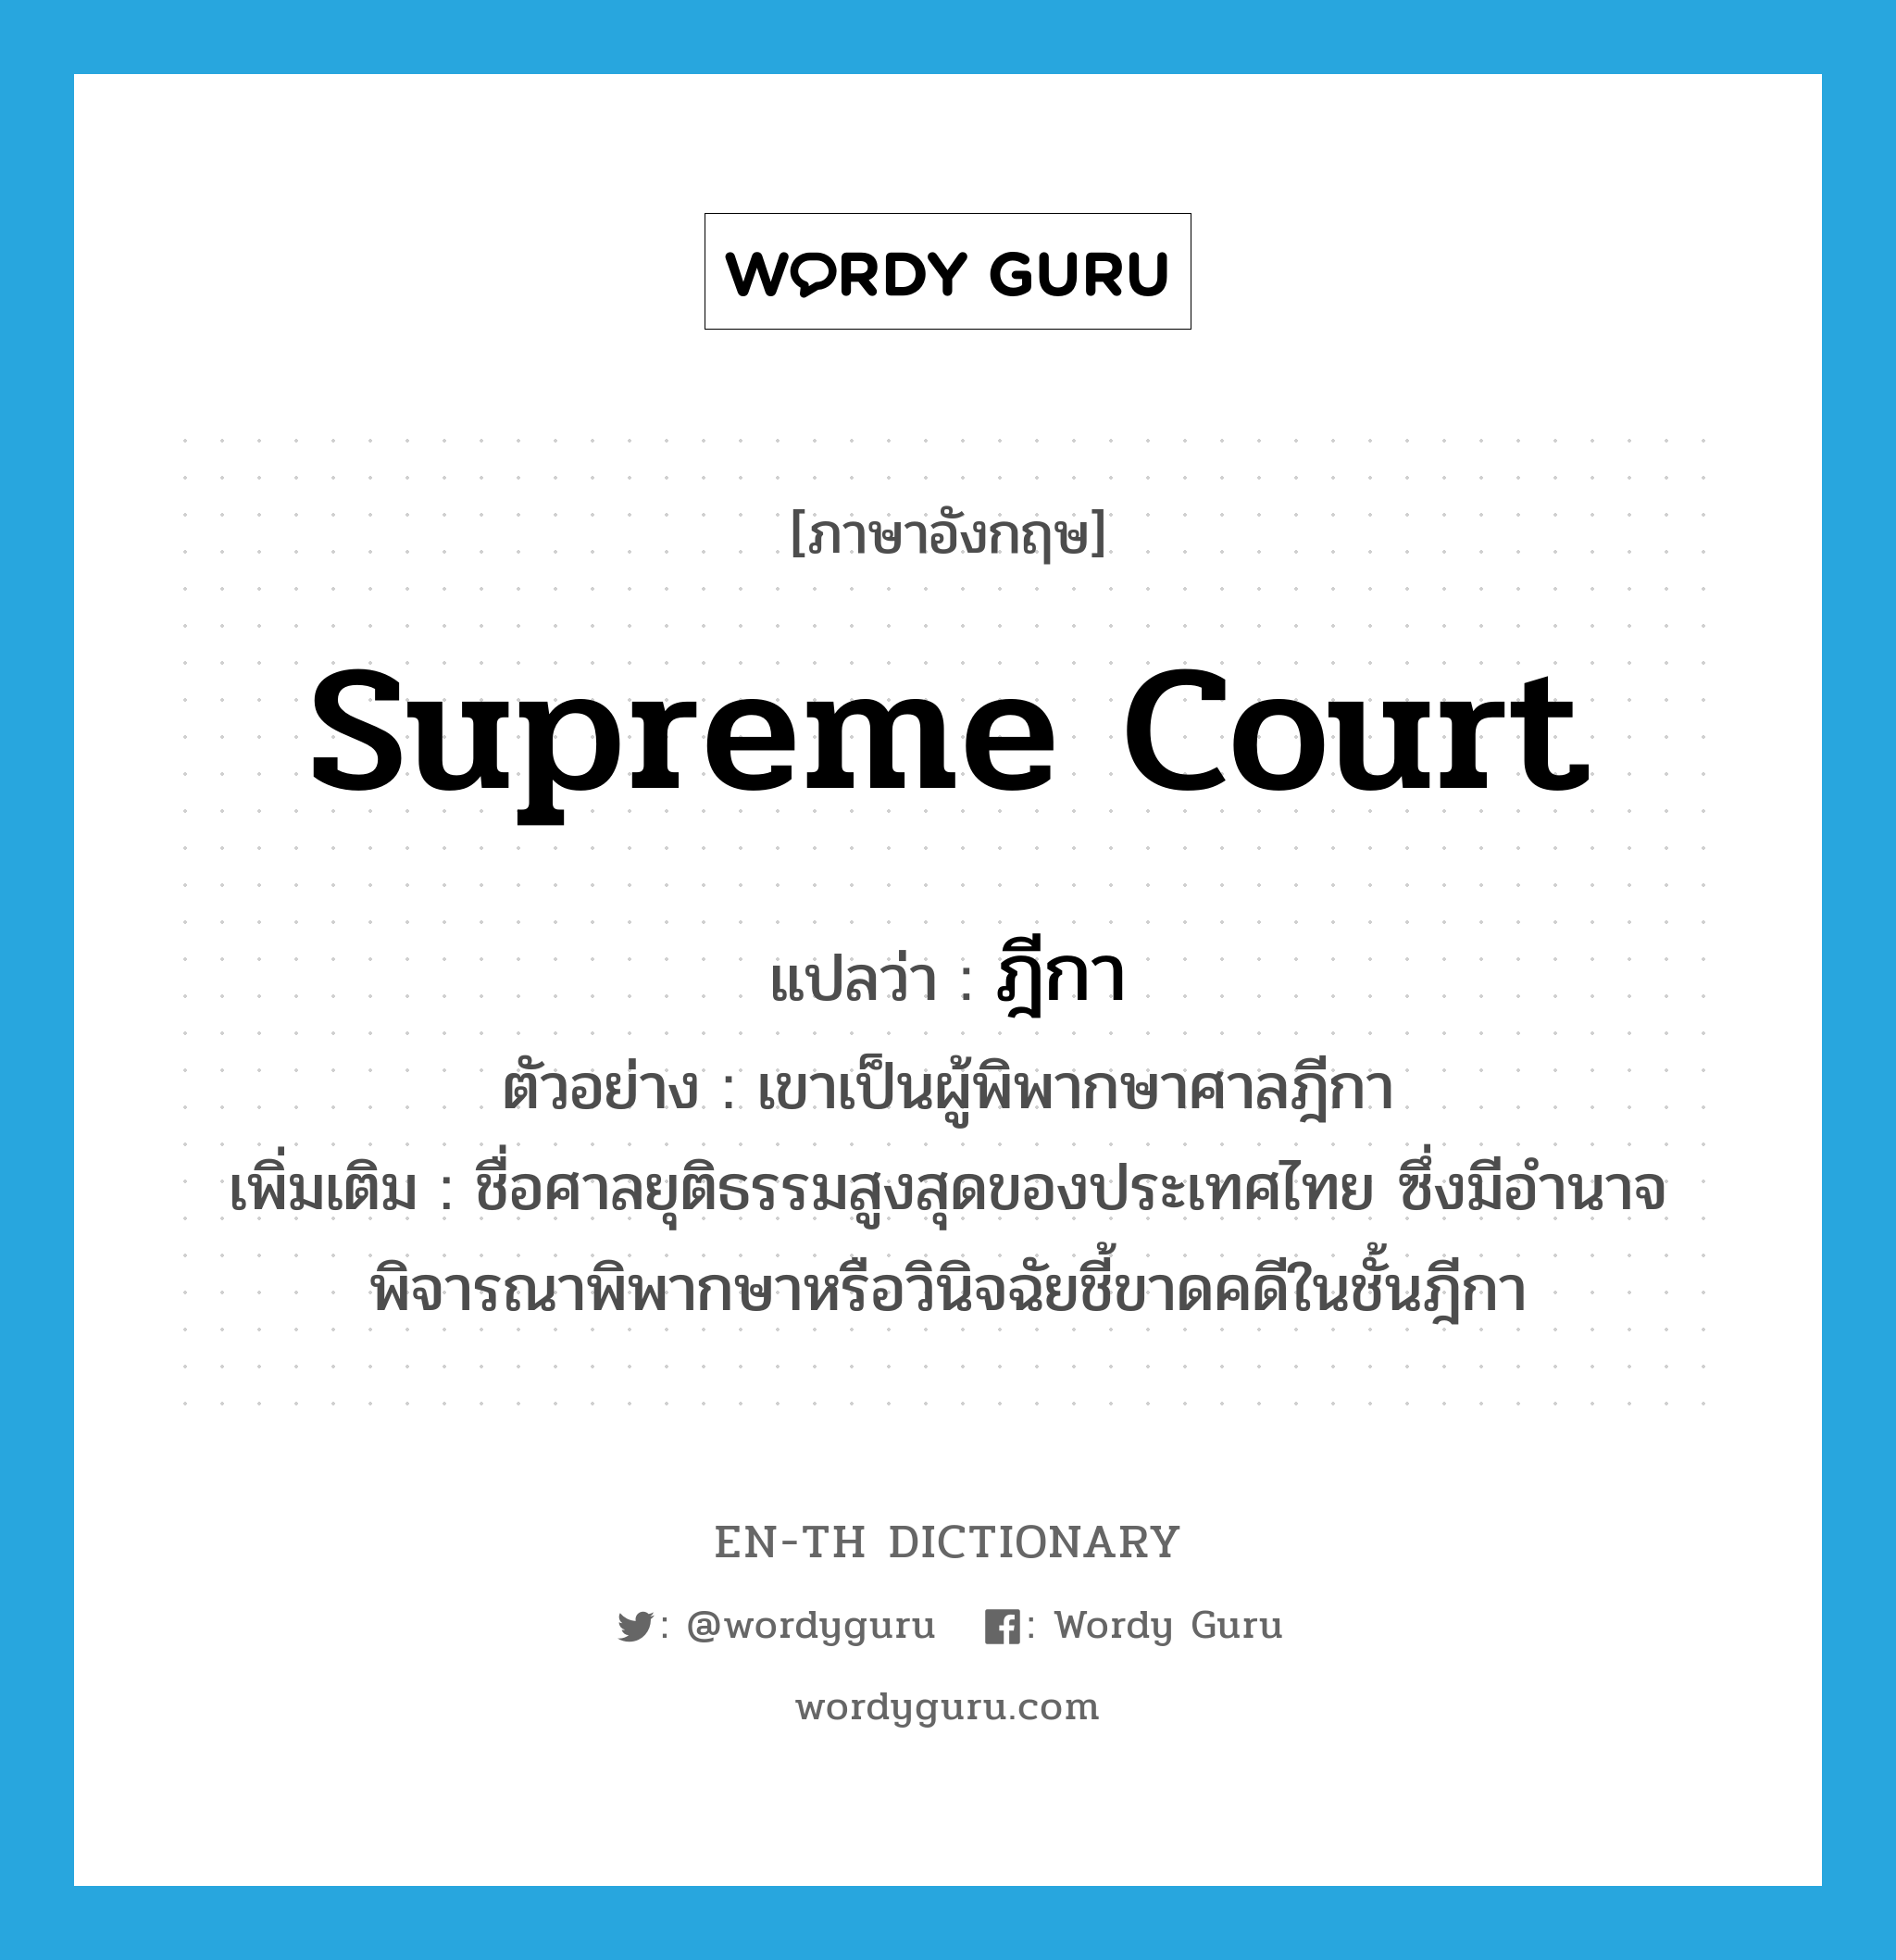 ฎีกา ภาษาอังกฤษ?, คำศัพท์ภาษาอังกฤษ ฎีกา แปลว่า Supreme Court ประเภท N ตัวอย่าง เขาเป็นผู้พิพากษาศาลฎีกา เพิ่มเติม ชื่อศาลยุติธรรมสูงสุดของประเทศไทย ซึ่งมีอำนาจพิจารณาพิพากษาหรือวินิจฉัยชี้ขาดคดีในชั้นฎีกา หมวด N